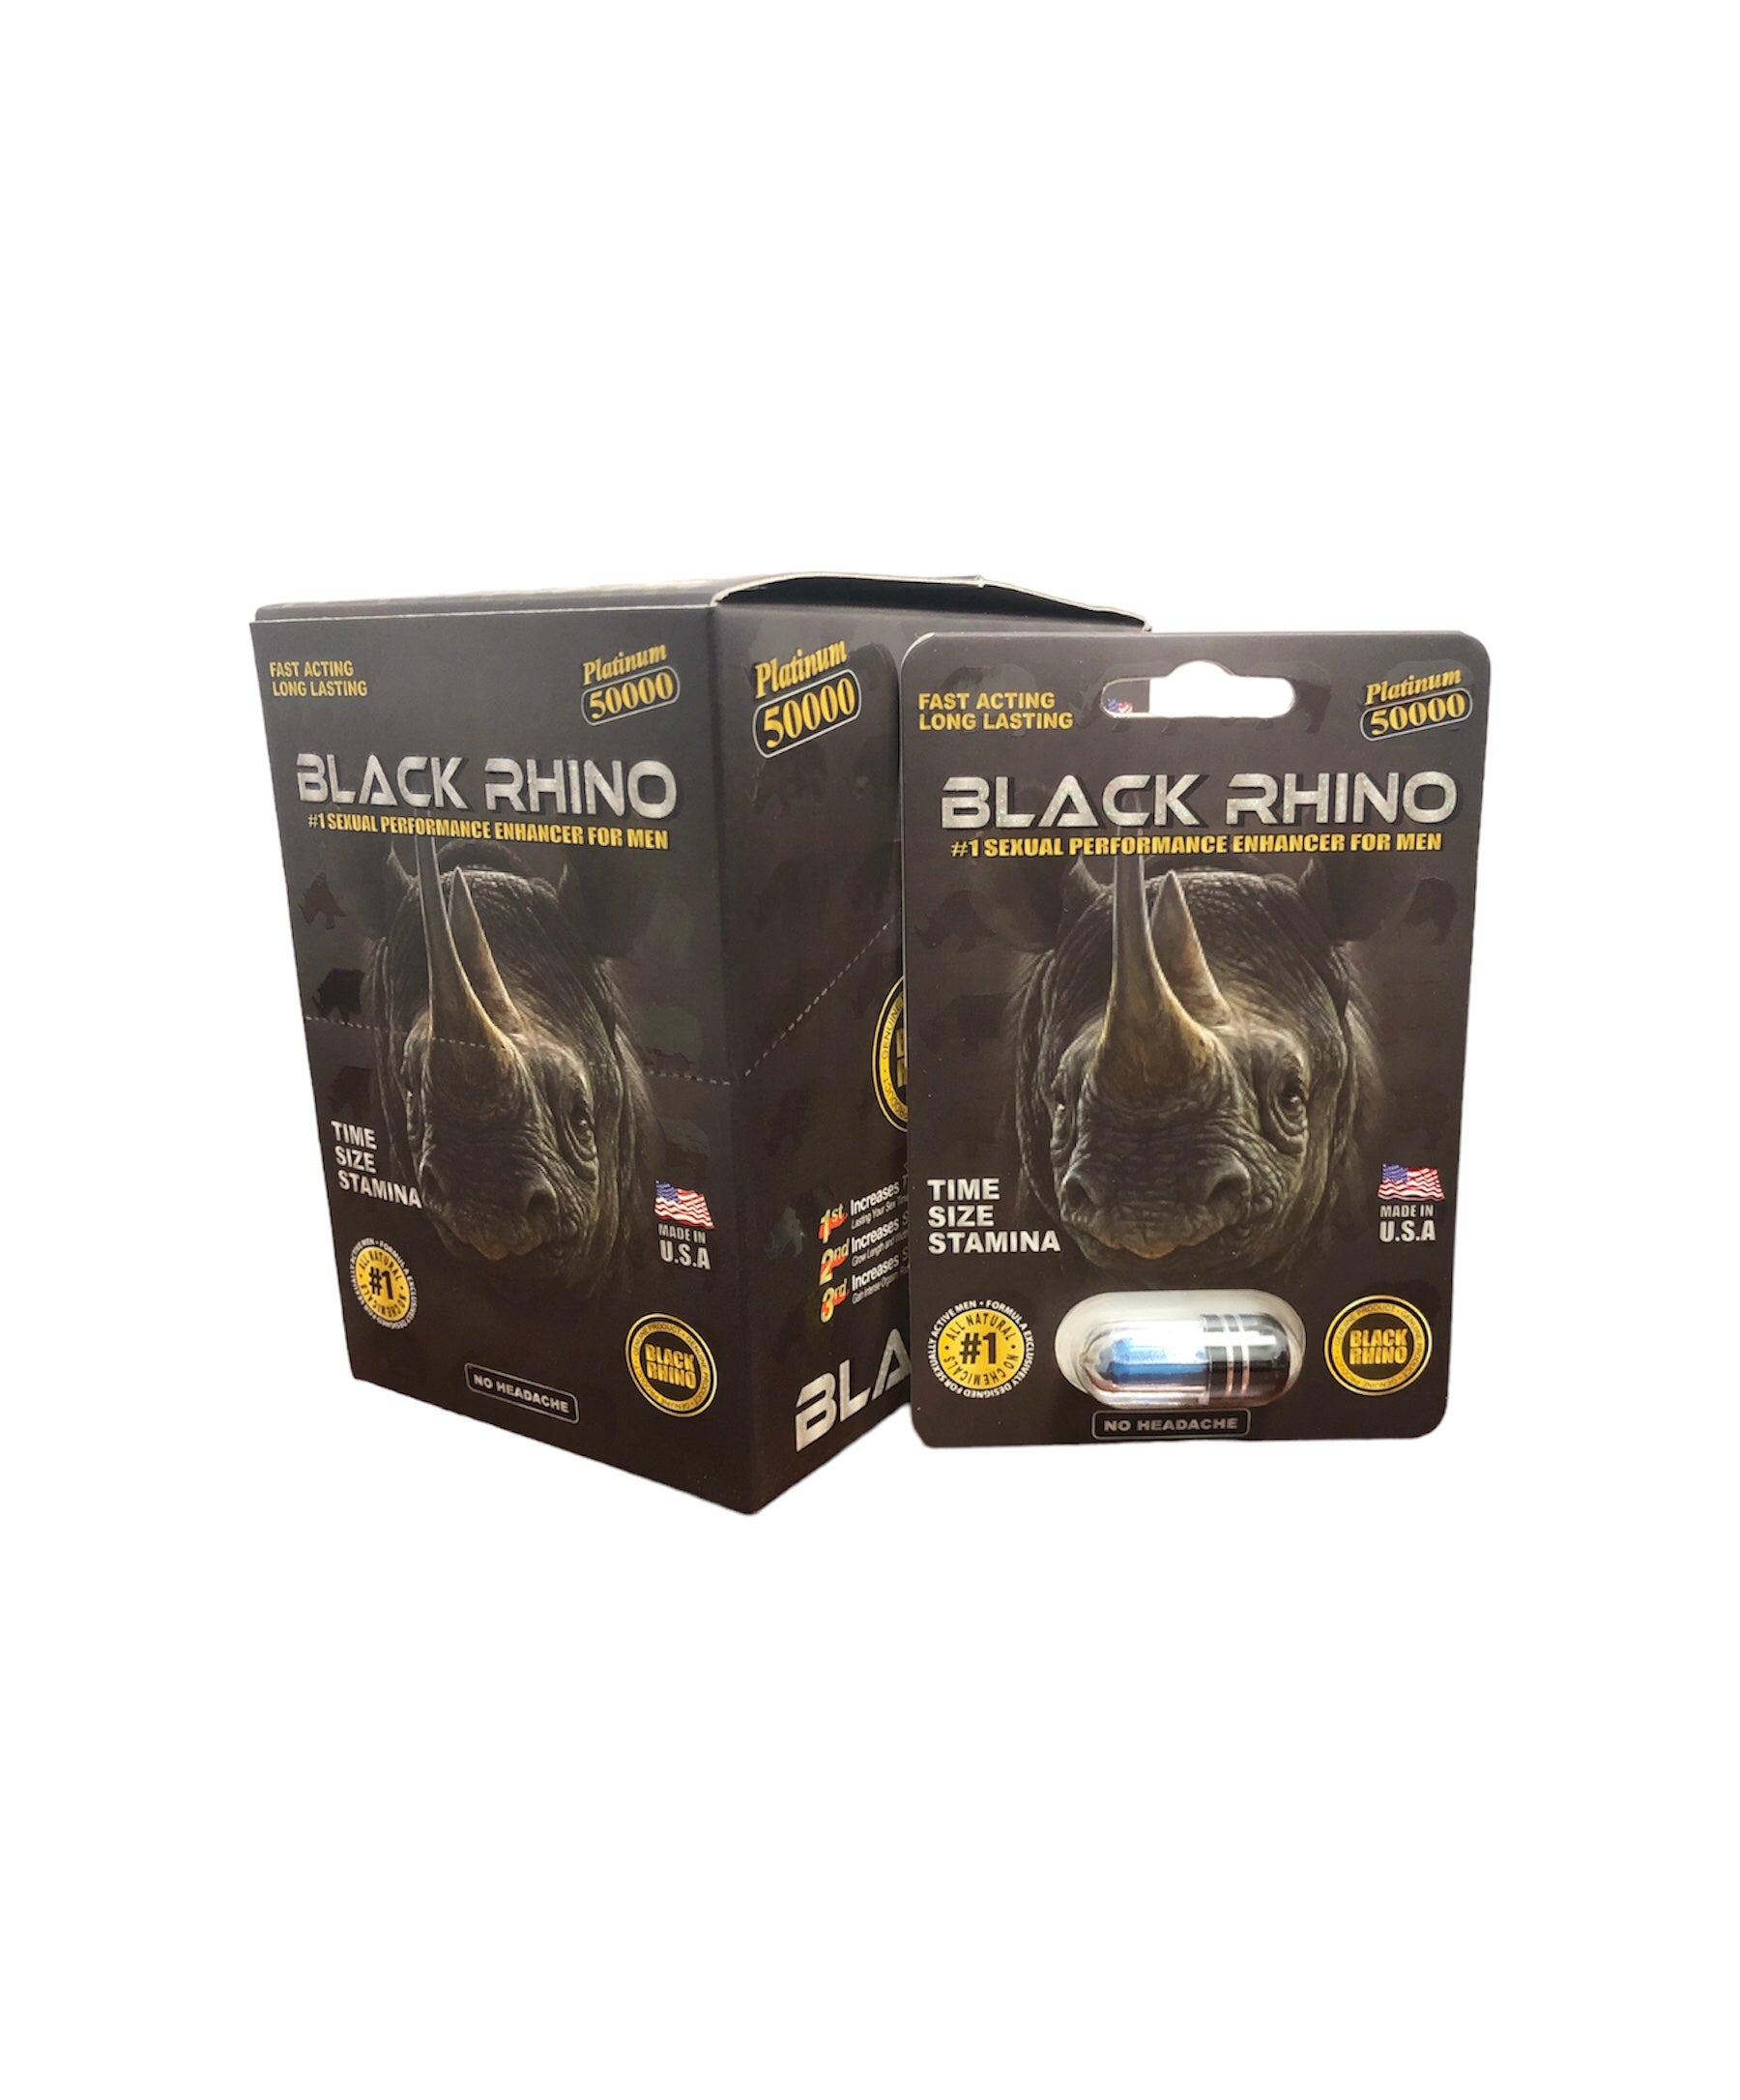 BLACK RHINO 50000 | MALE ENHANCEMENT | 24PK